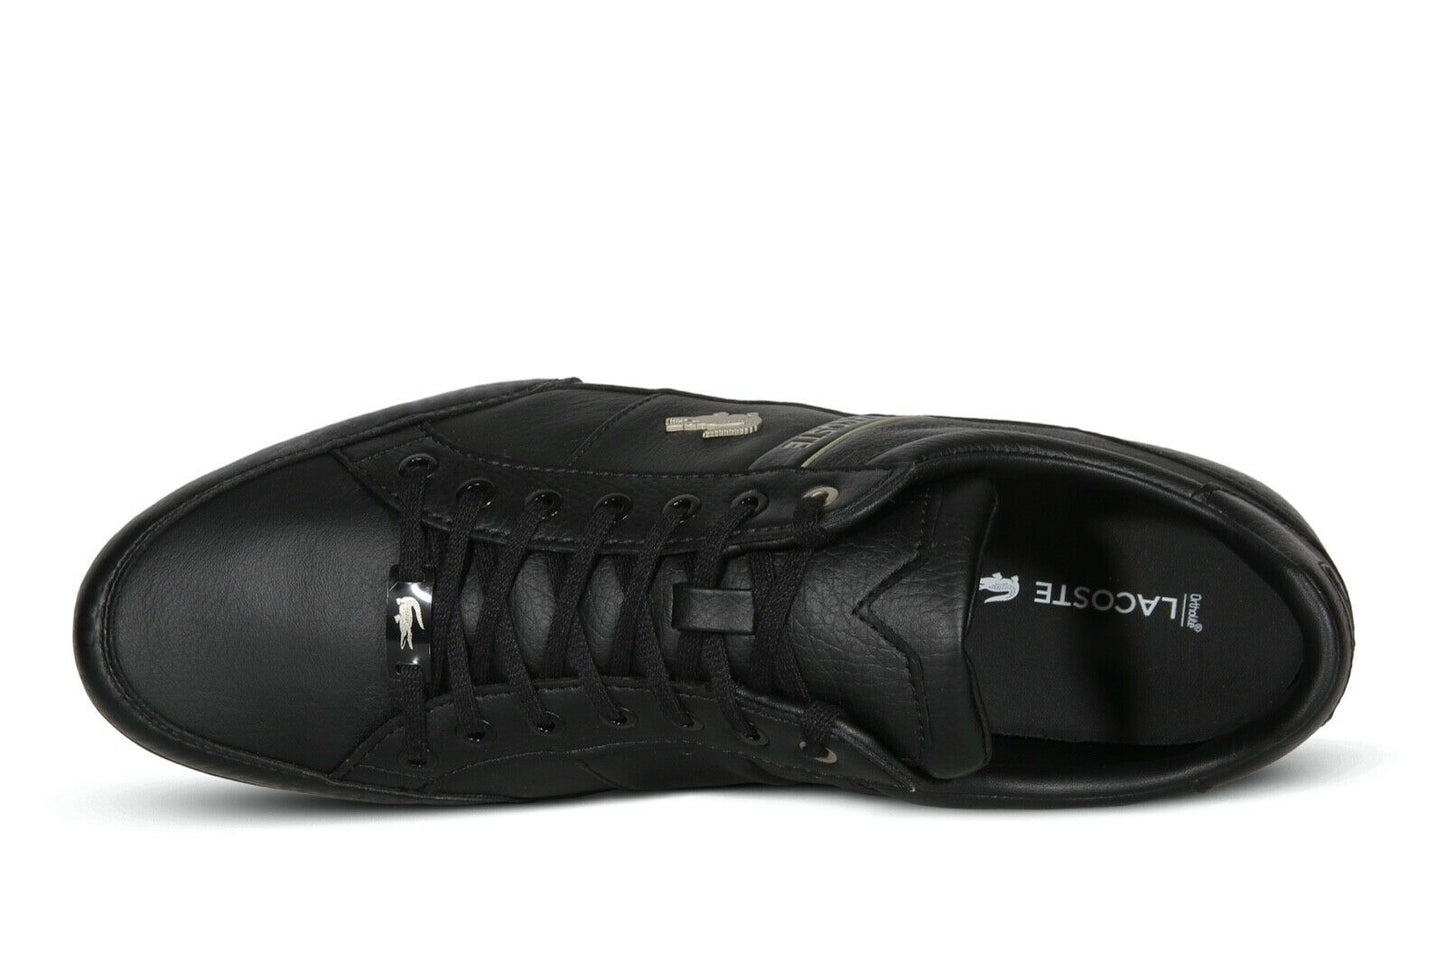 Lacoste Chaymon 0721 3 Men’s Sneakers in Black 7-41CMA006302H